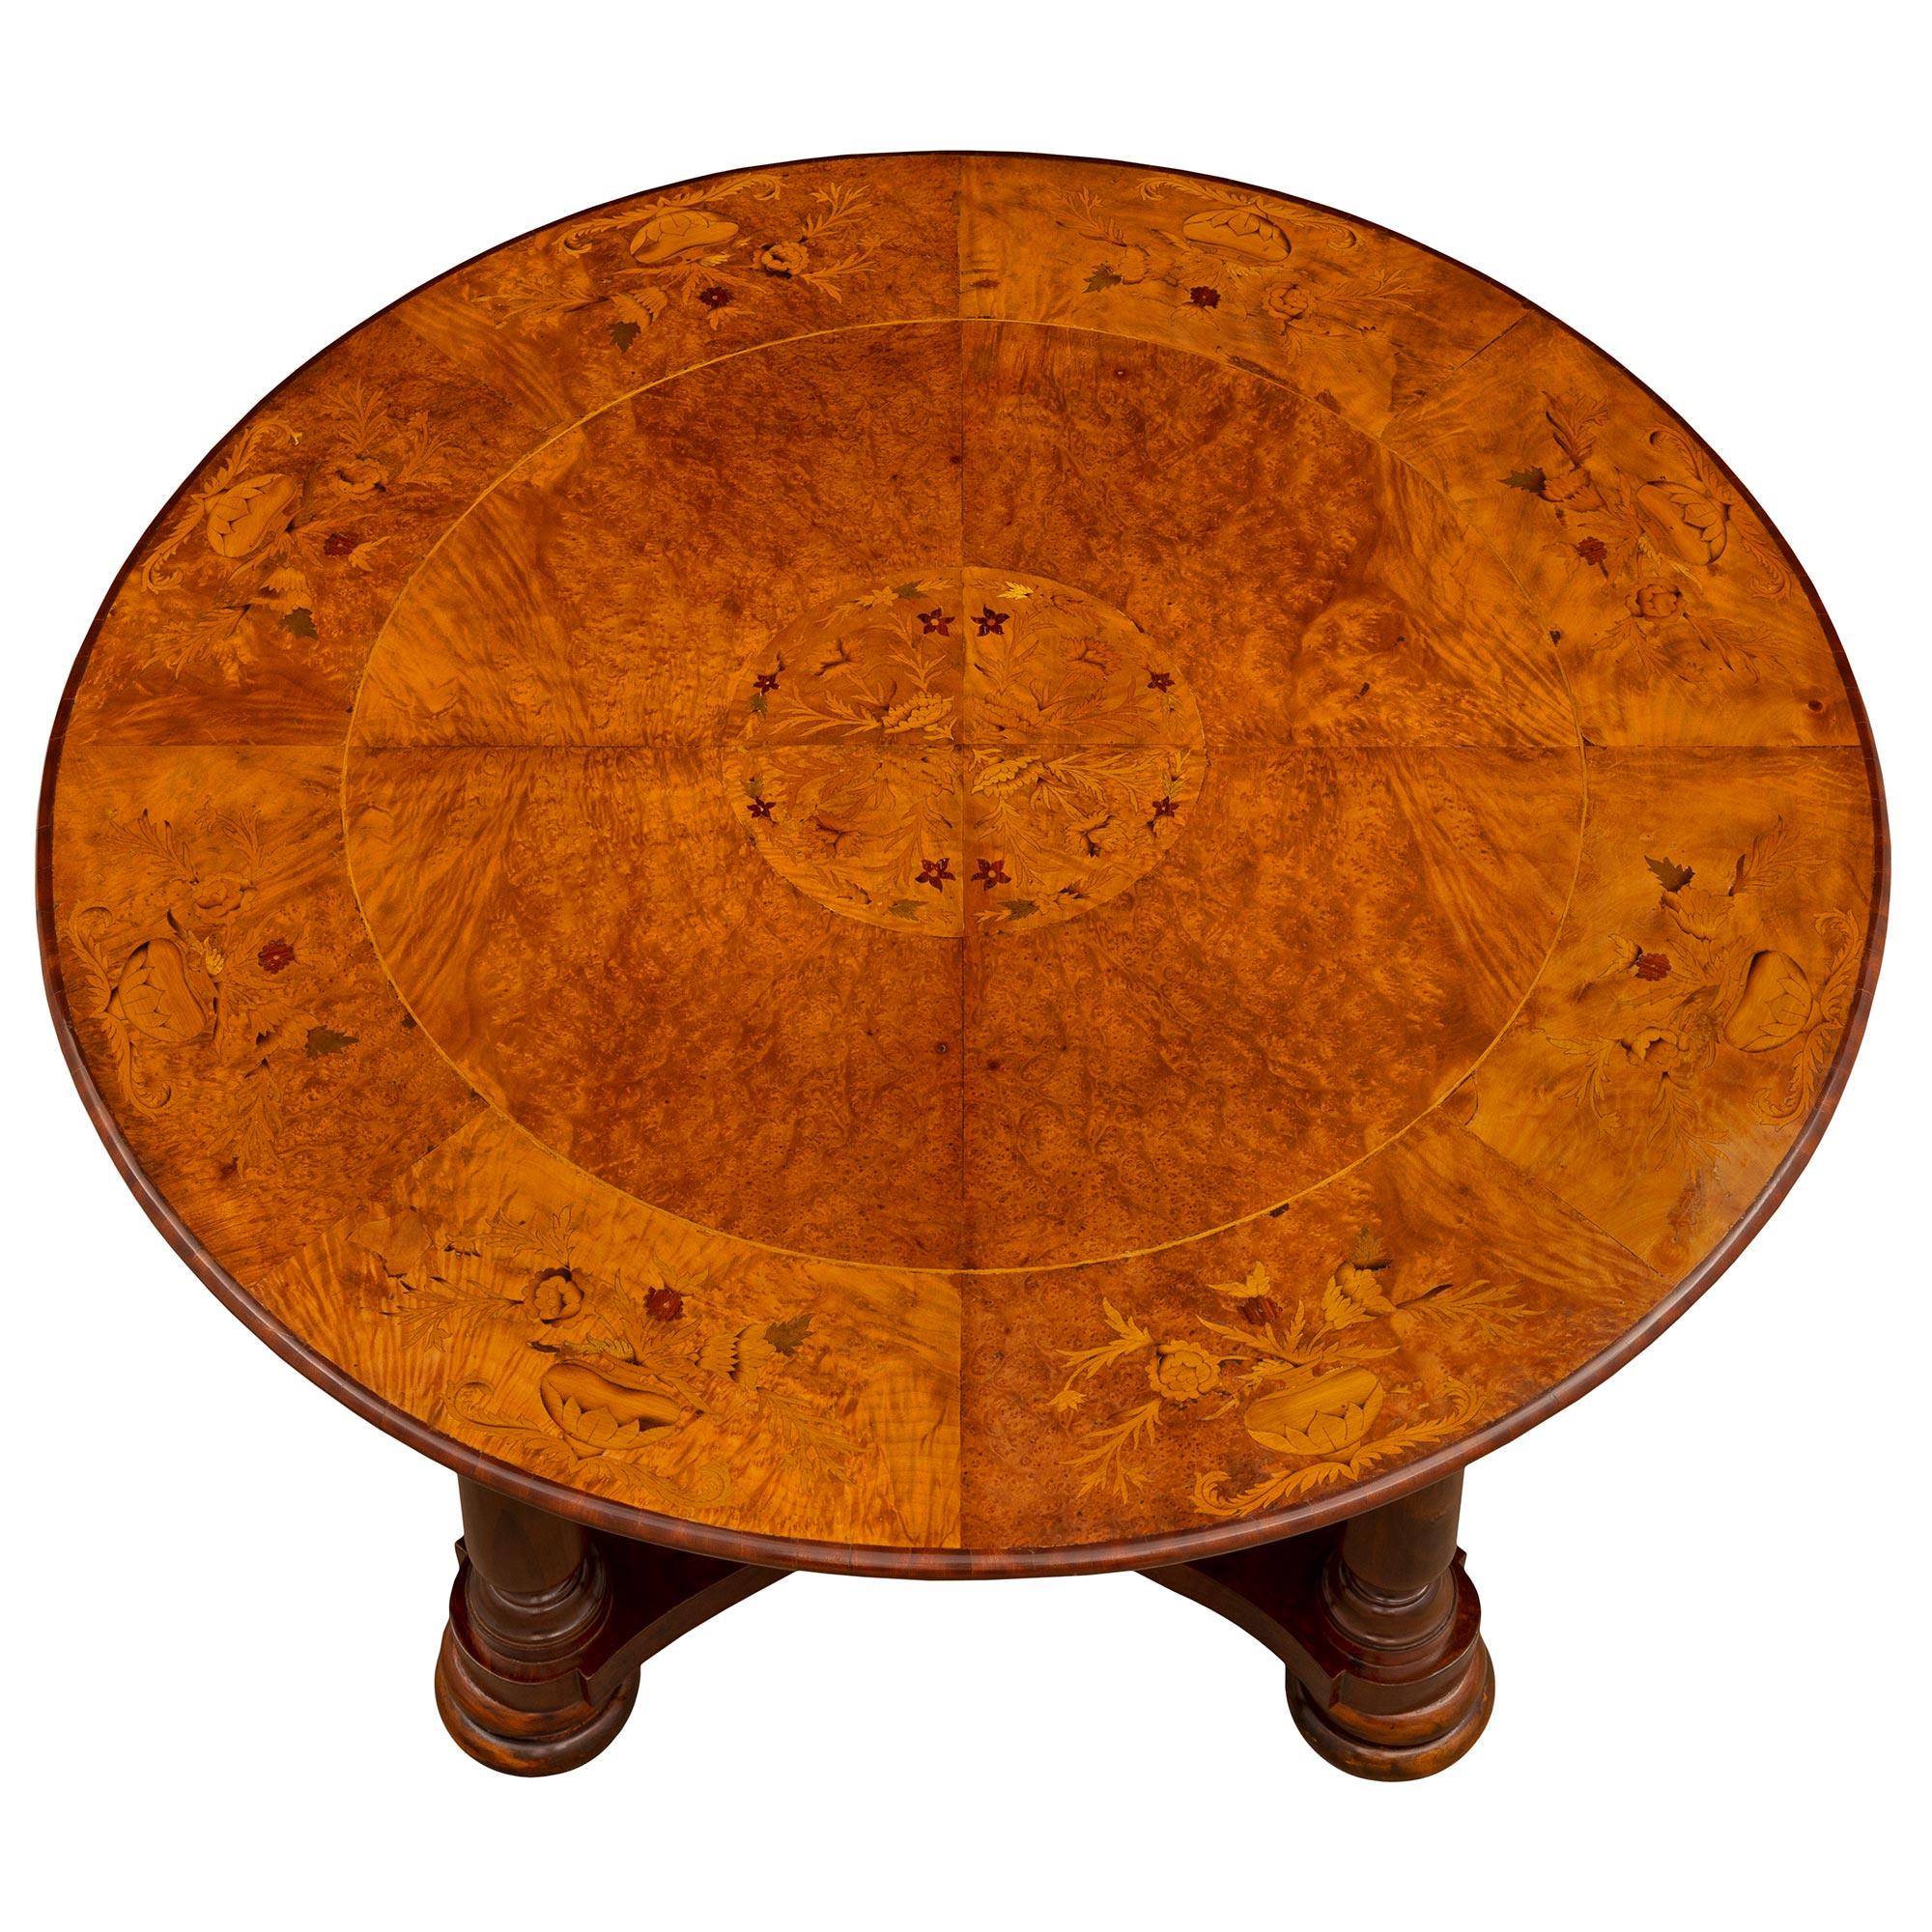 Ein schöner italienischer Mitteltisch aus Nussbaum, Wurzelholz, Ulme und exotischem Holz aus dem 19. Der runde Tisch steht auf höchst dekorativen, doppelt gesprenkelten Füßen unter kreisförmig gedrechselten, konisch zulaufenden Beinen mit elegantem,